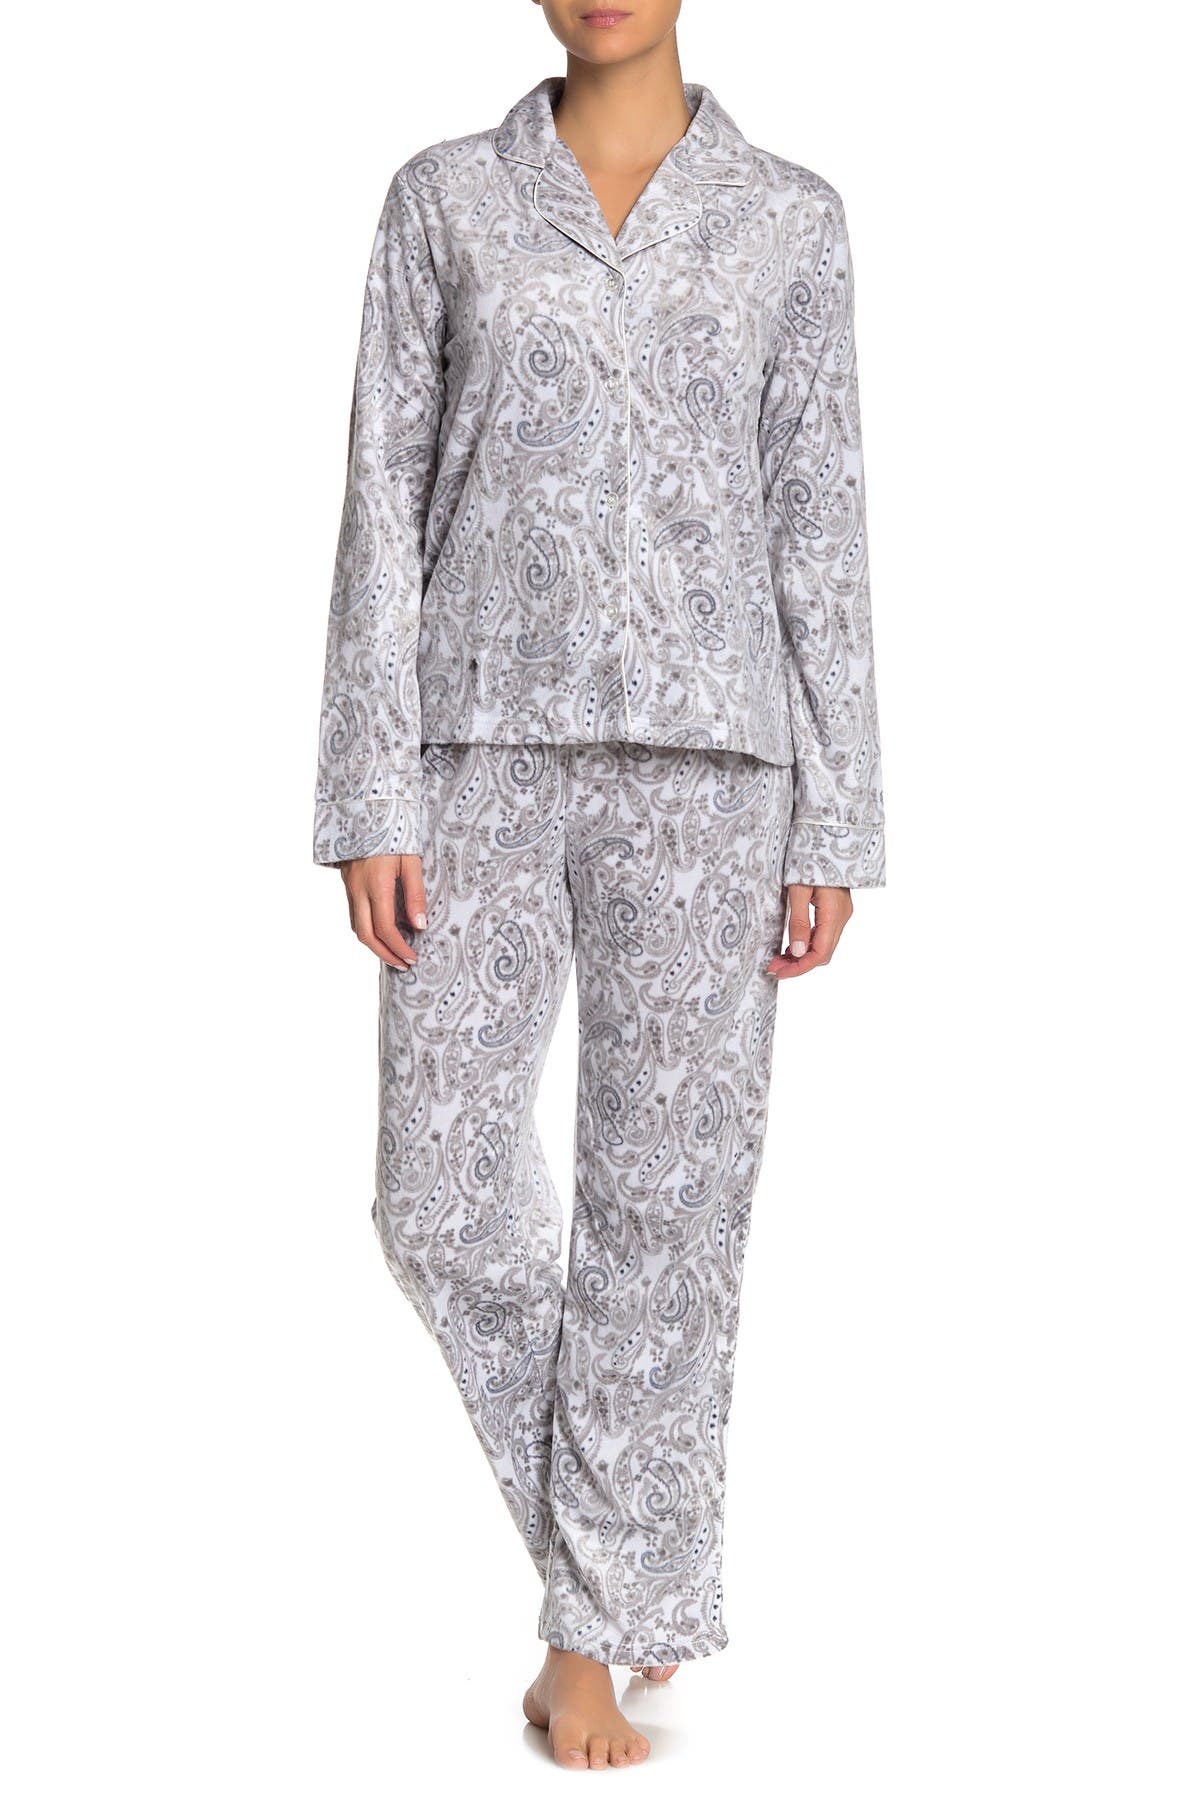 Tahari | Essentially Yours Fleece 2-Piece Pajama Set | Nordstrom Rack